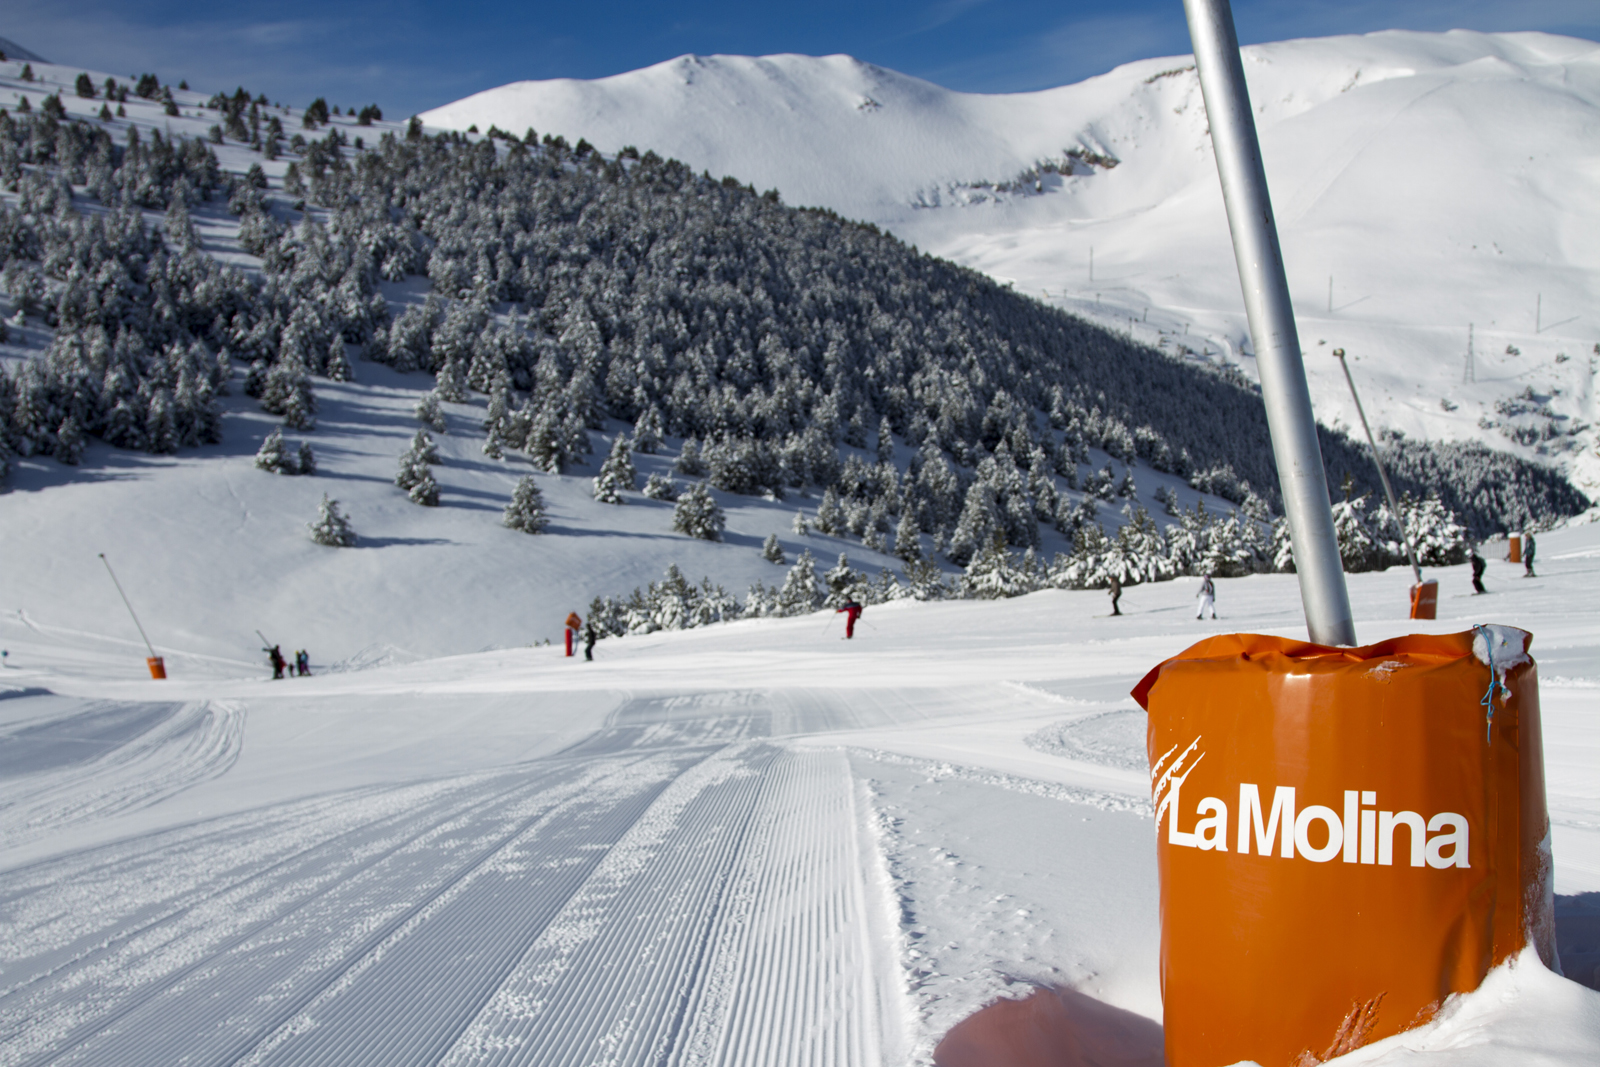 La Molina Season Ski pass - Only Sundays